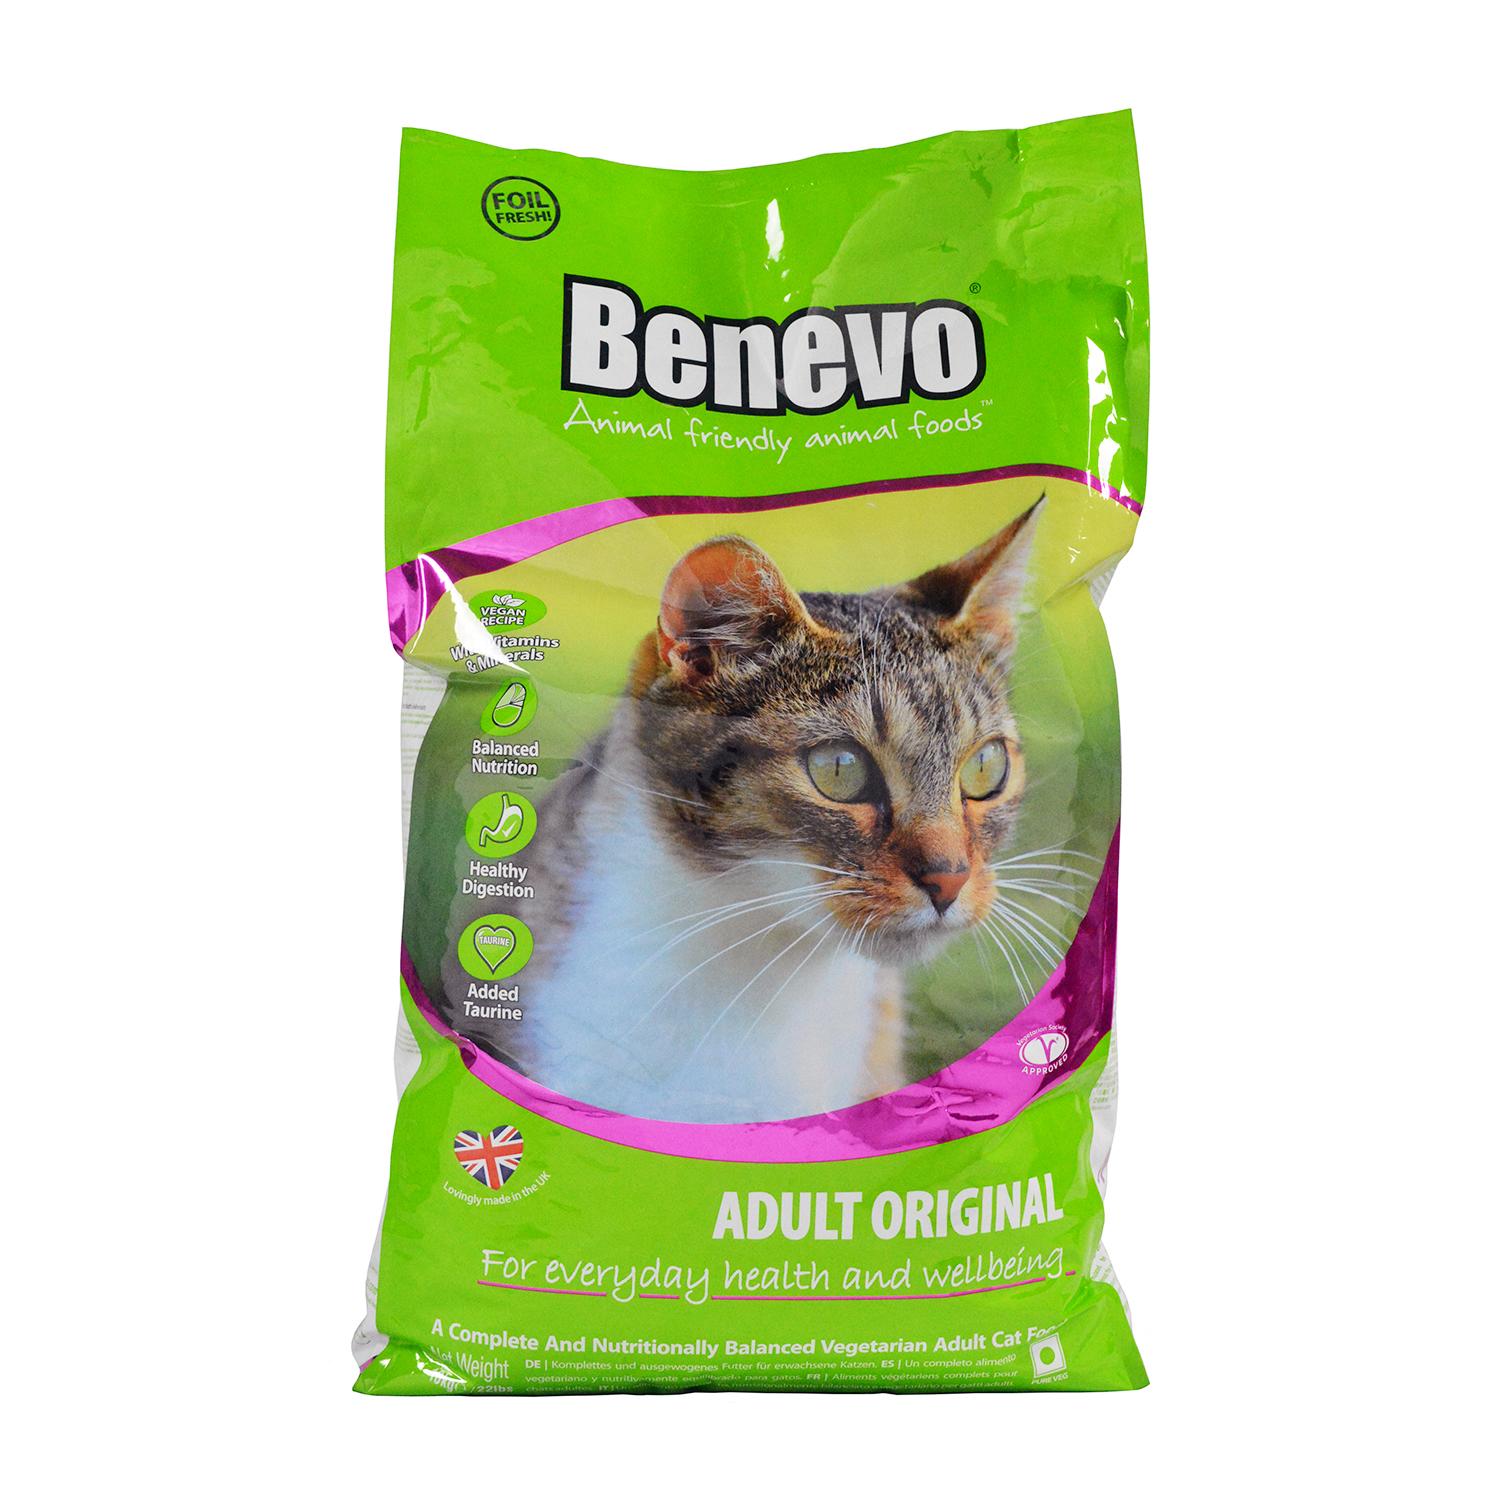 A discounted 10kg Bag of Benevo Vegan Cat Food